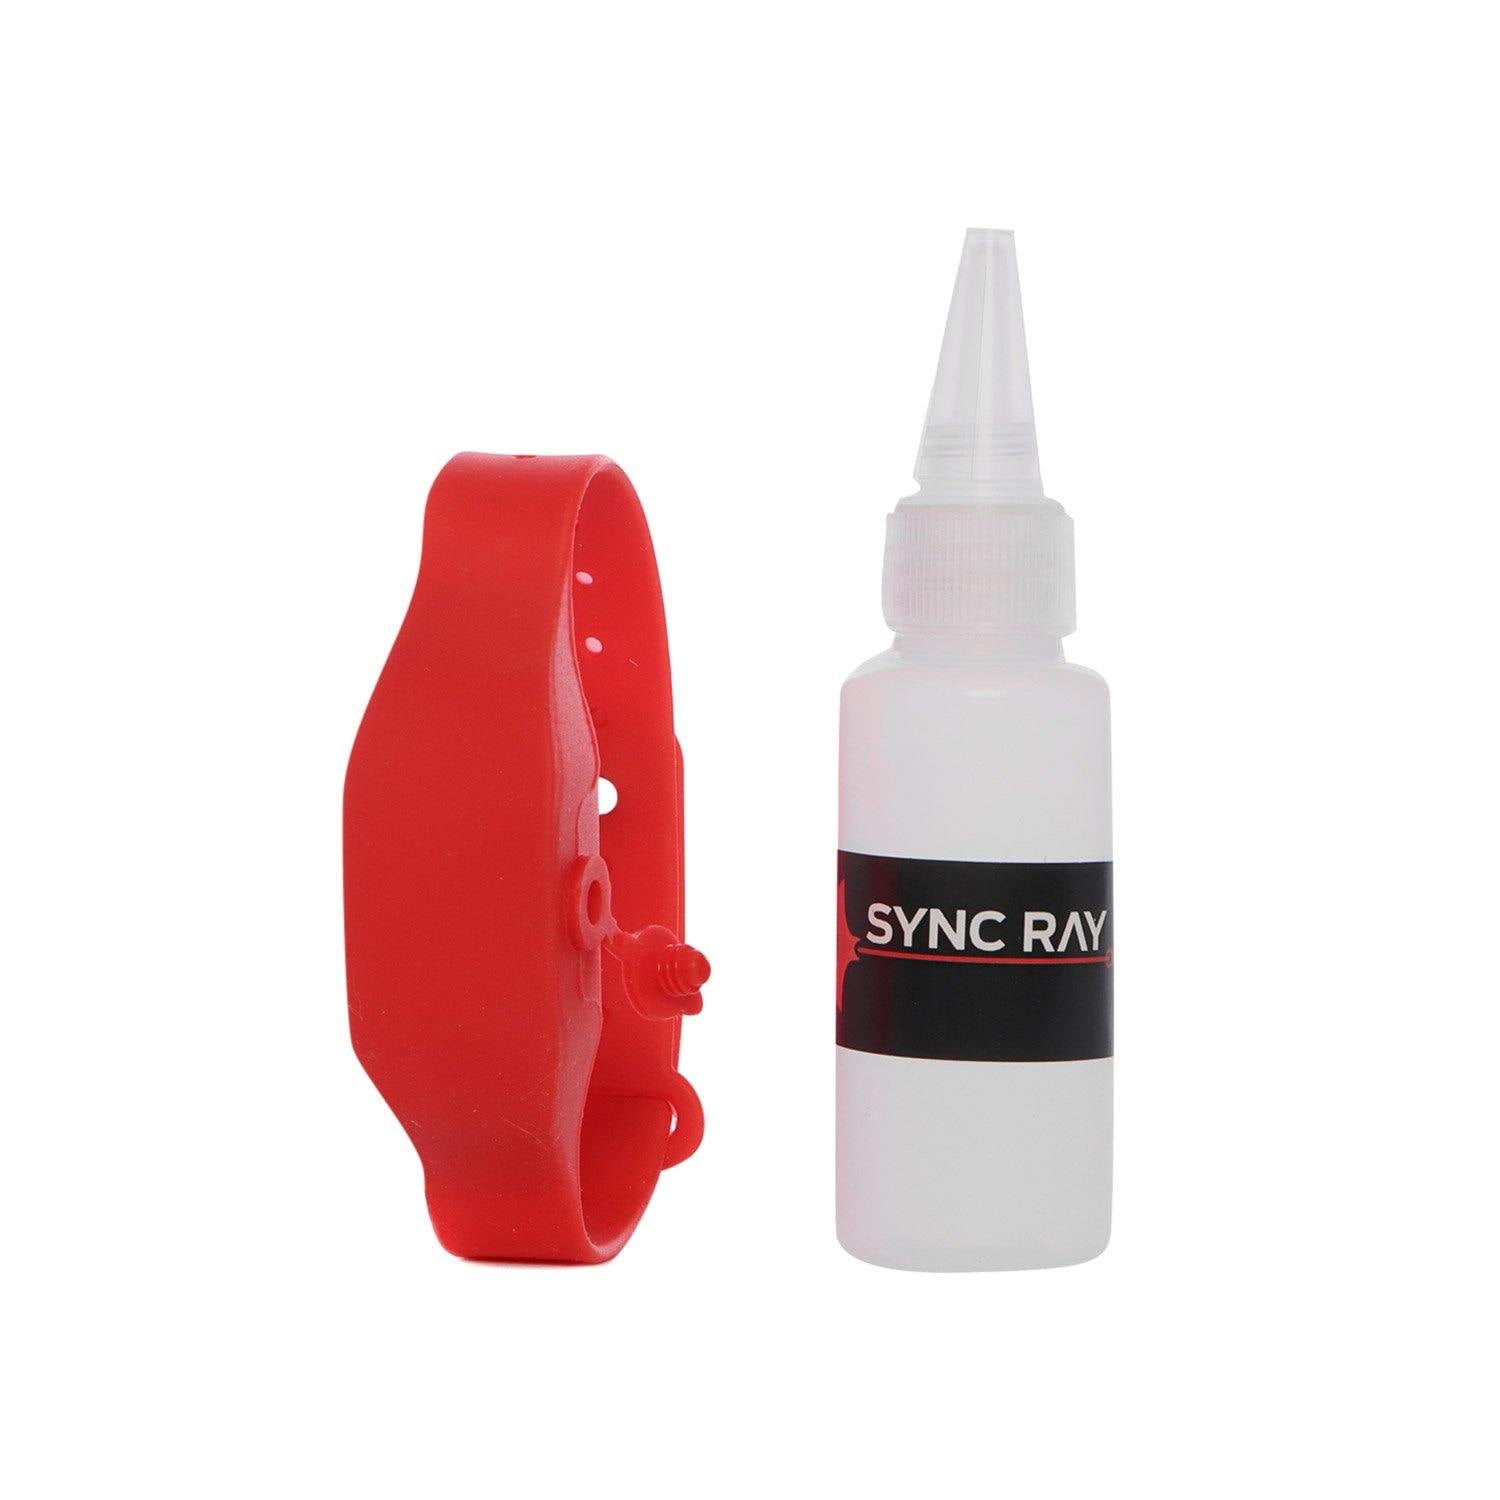 SYNC RAY BANDA SANITIZANTE DE SILICON GB10 ROJO - Sync Ray